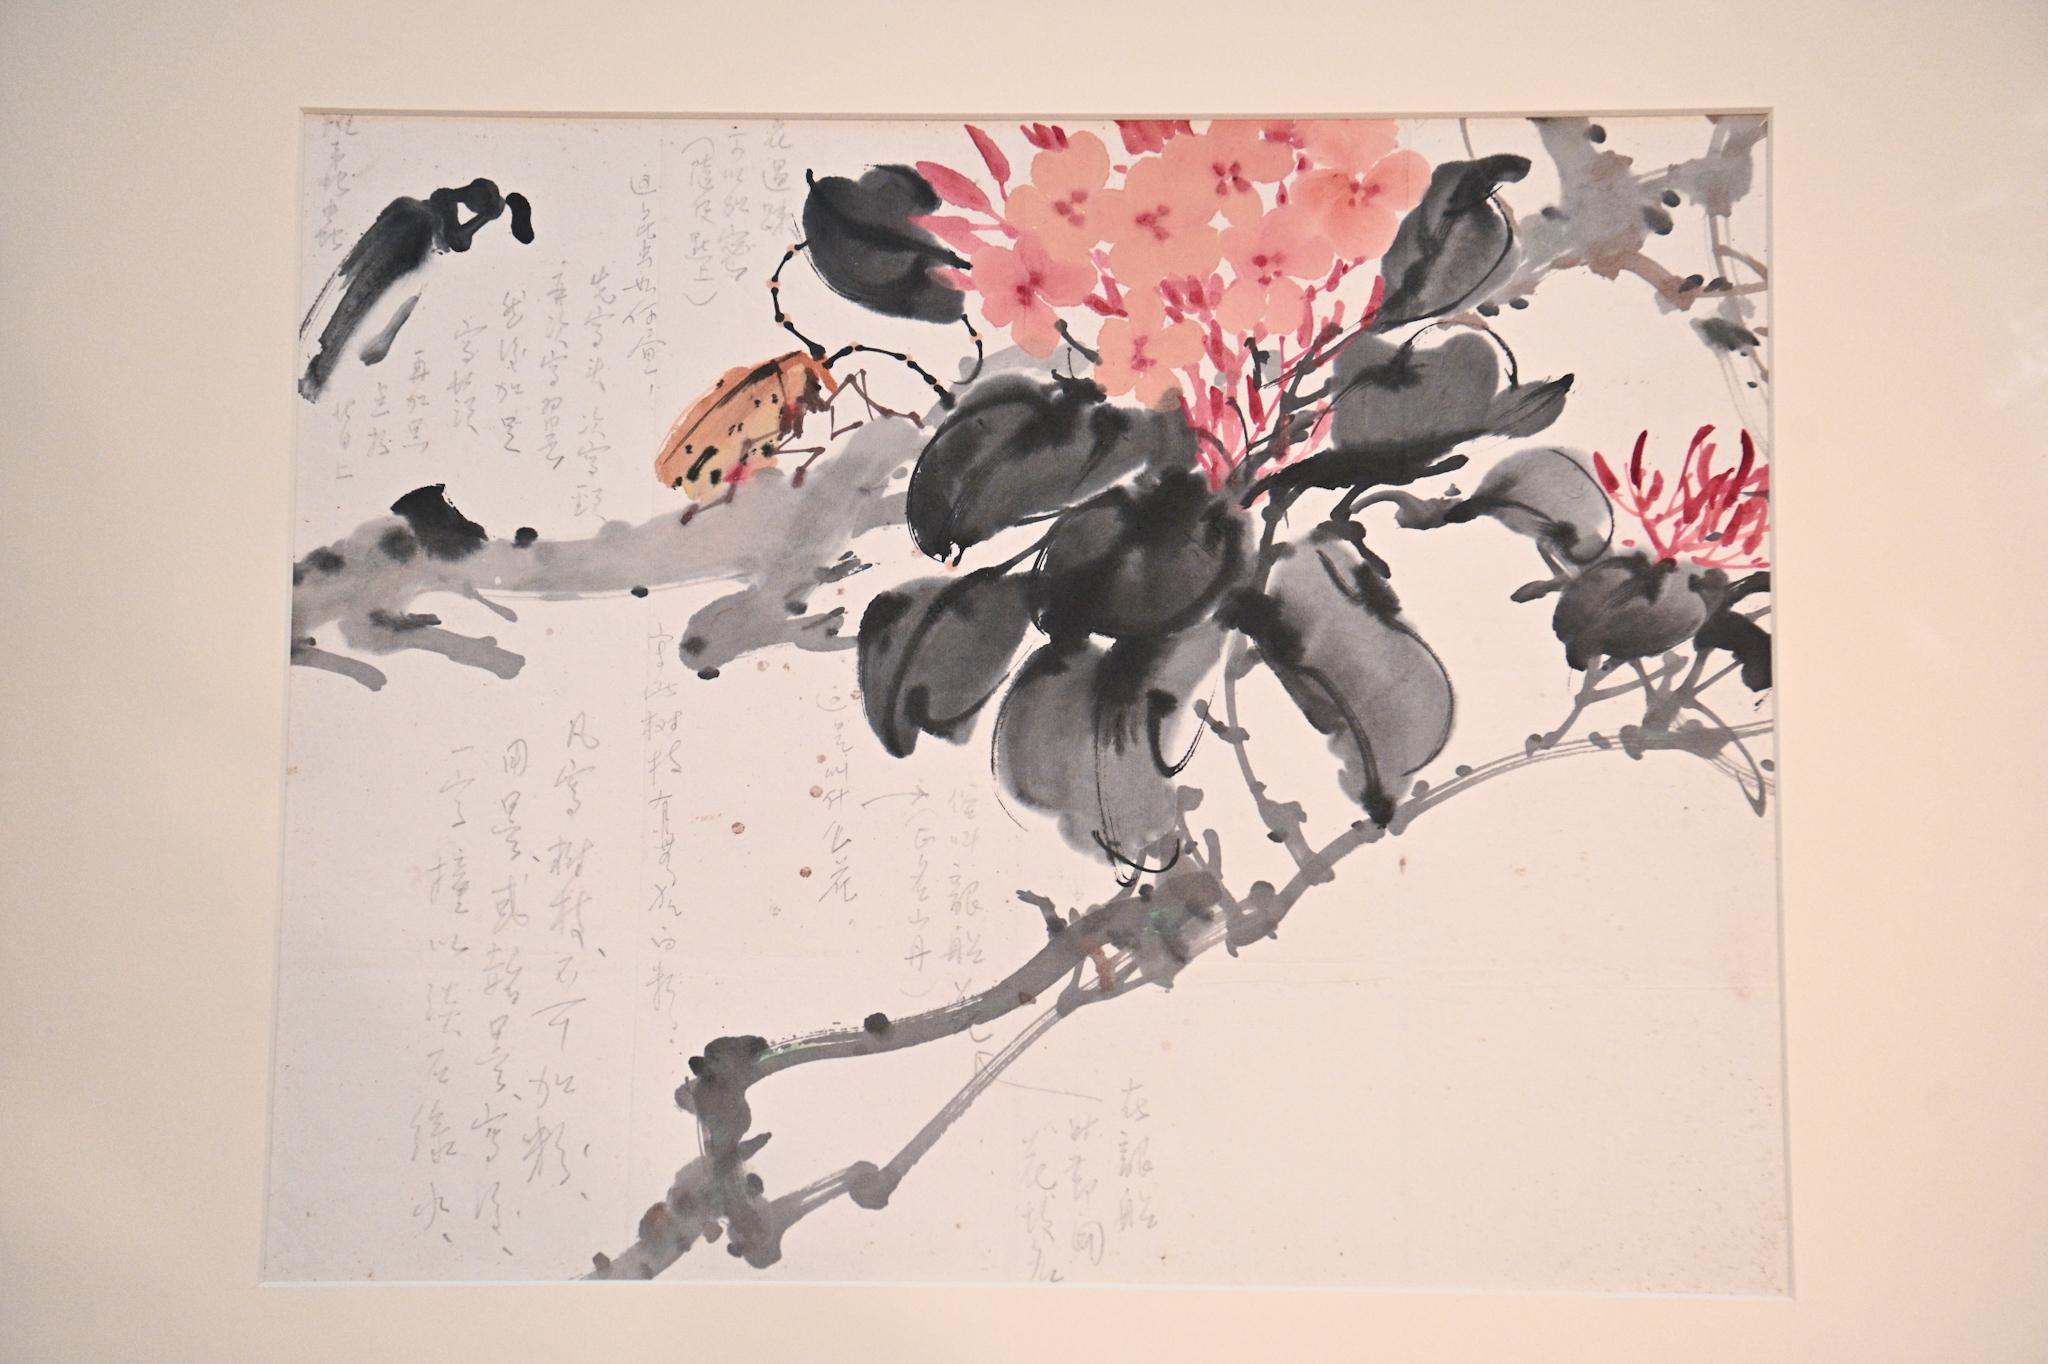 香港文化博物館明日（九月二十一日）起舉行「千里覓藝—趙少昂與陳崎師生對話」展覽。圖示陳崎的畫課習作作品《龍船花》，作品上記錄他與老師趙少昂之間的問答。